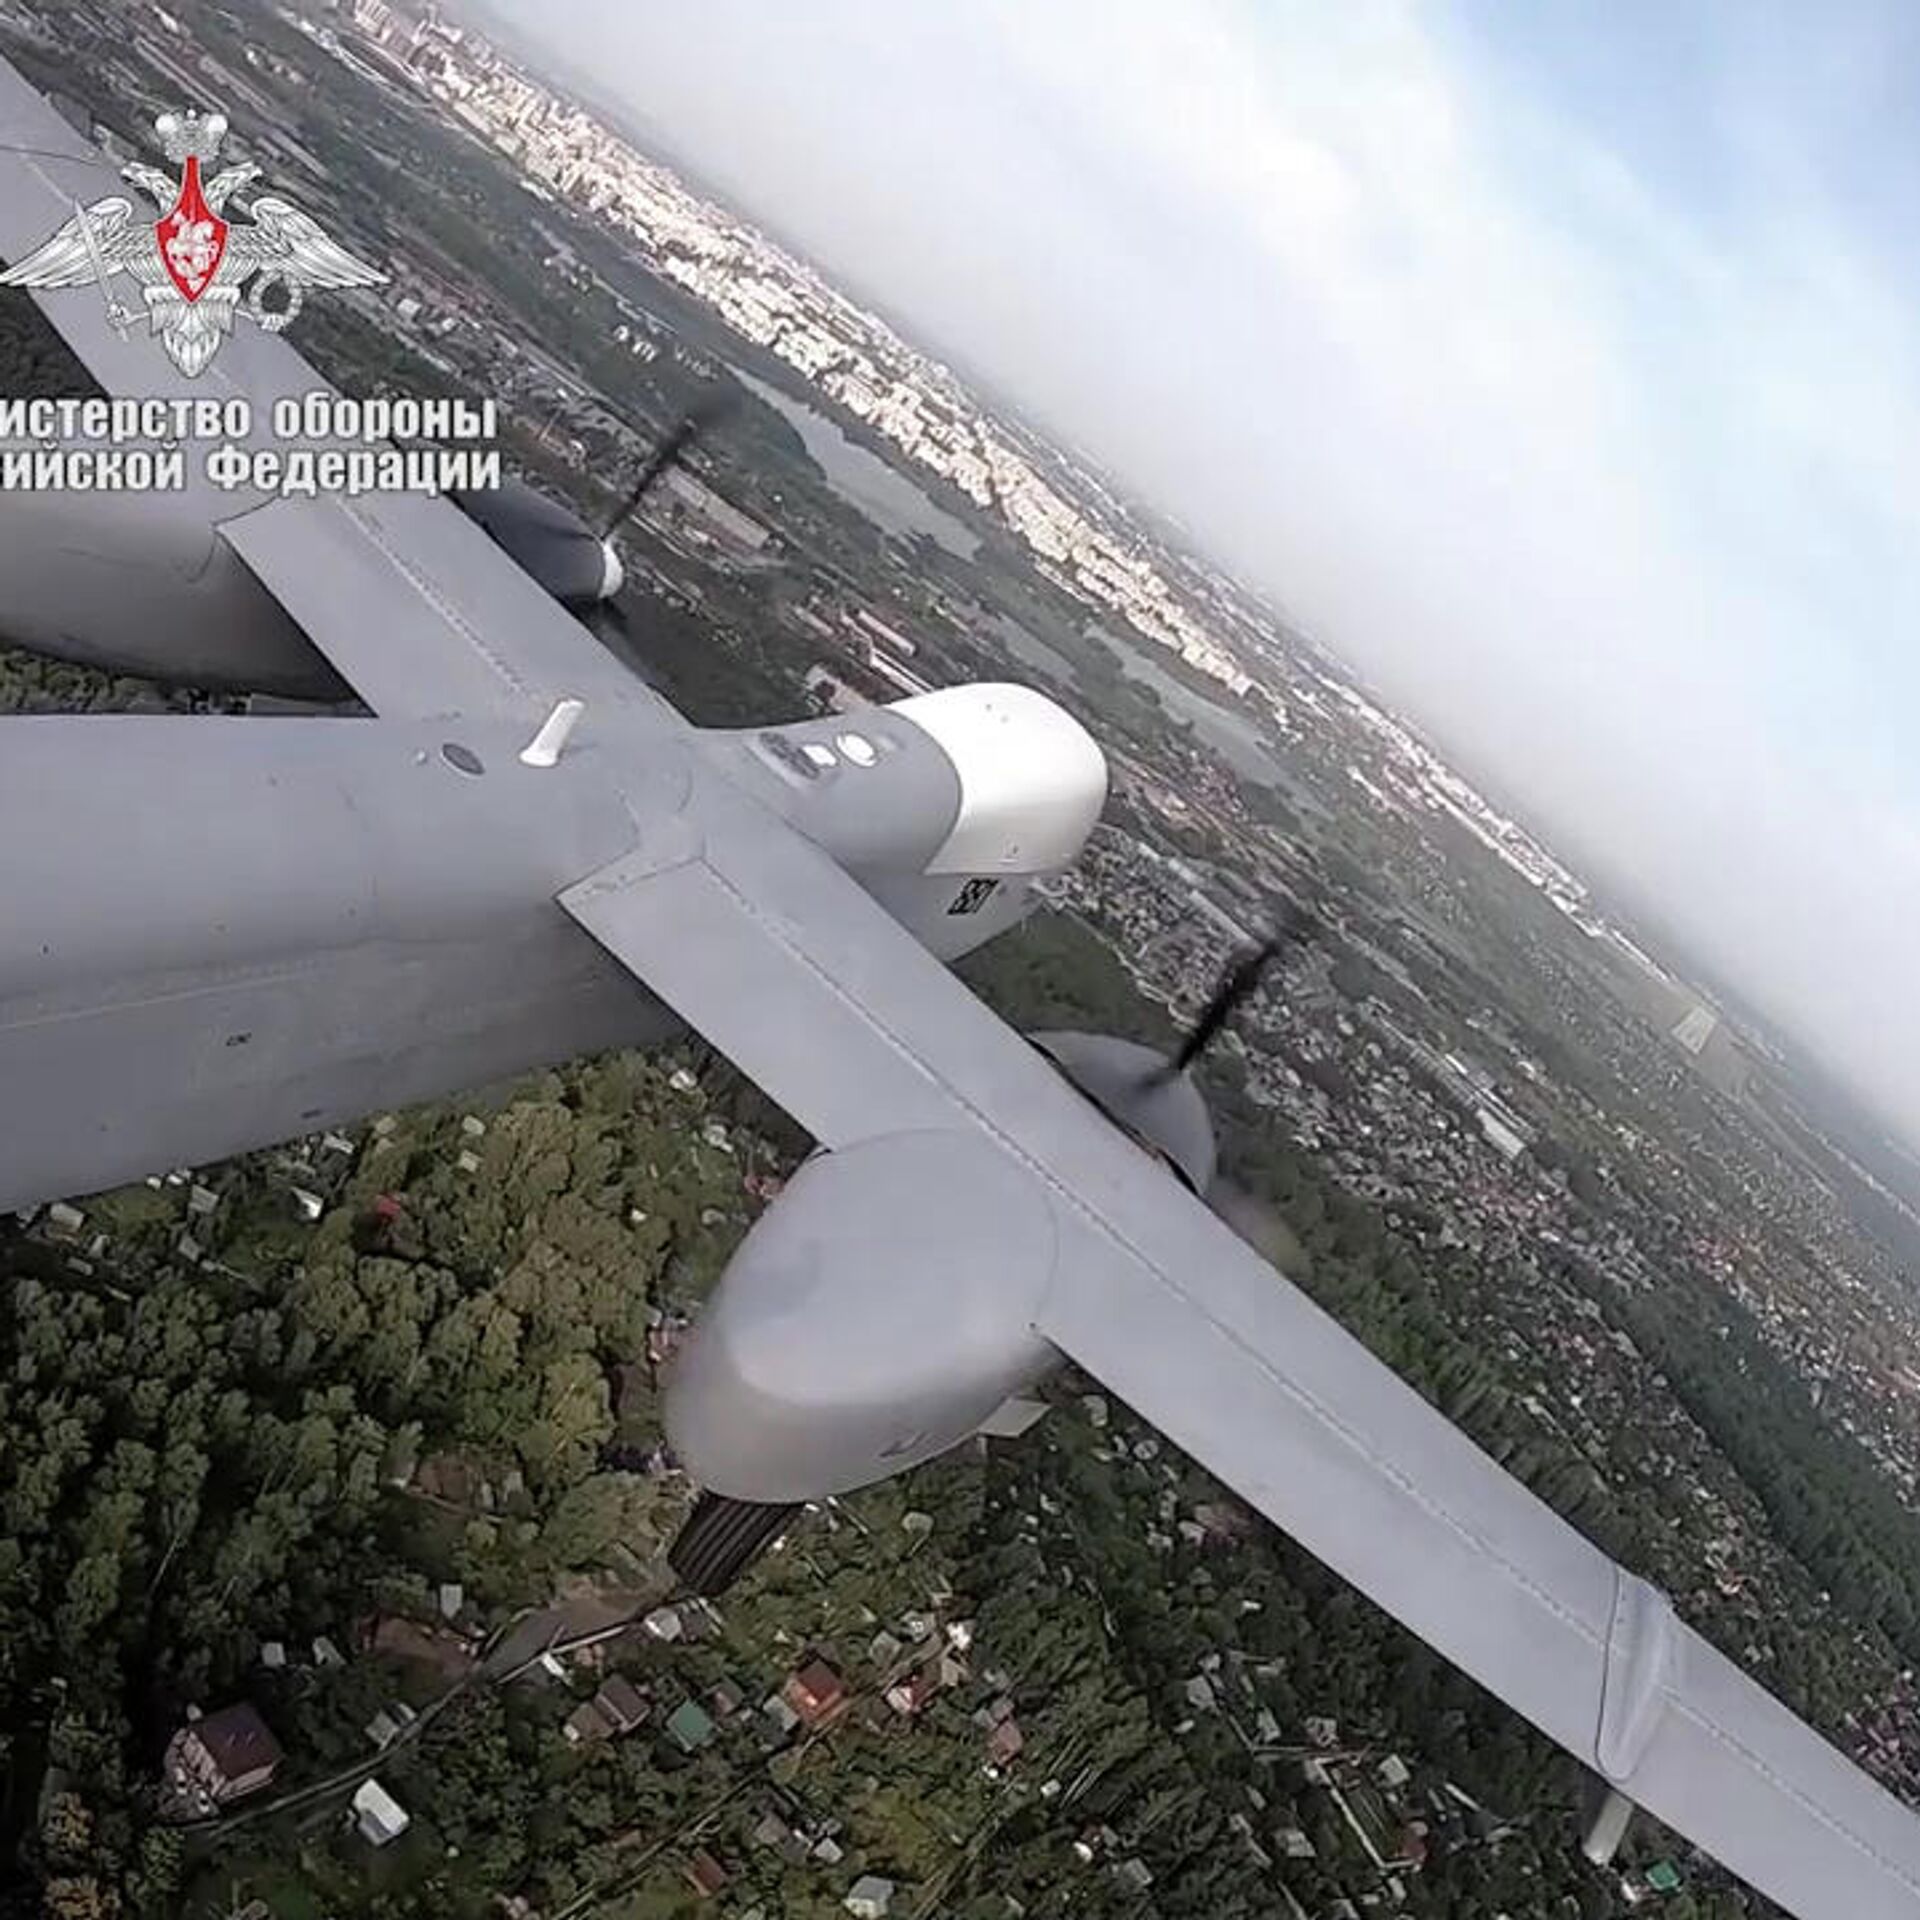 Rus insansız hava aracı "Altius" un maceraları